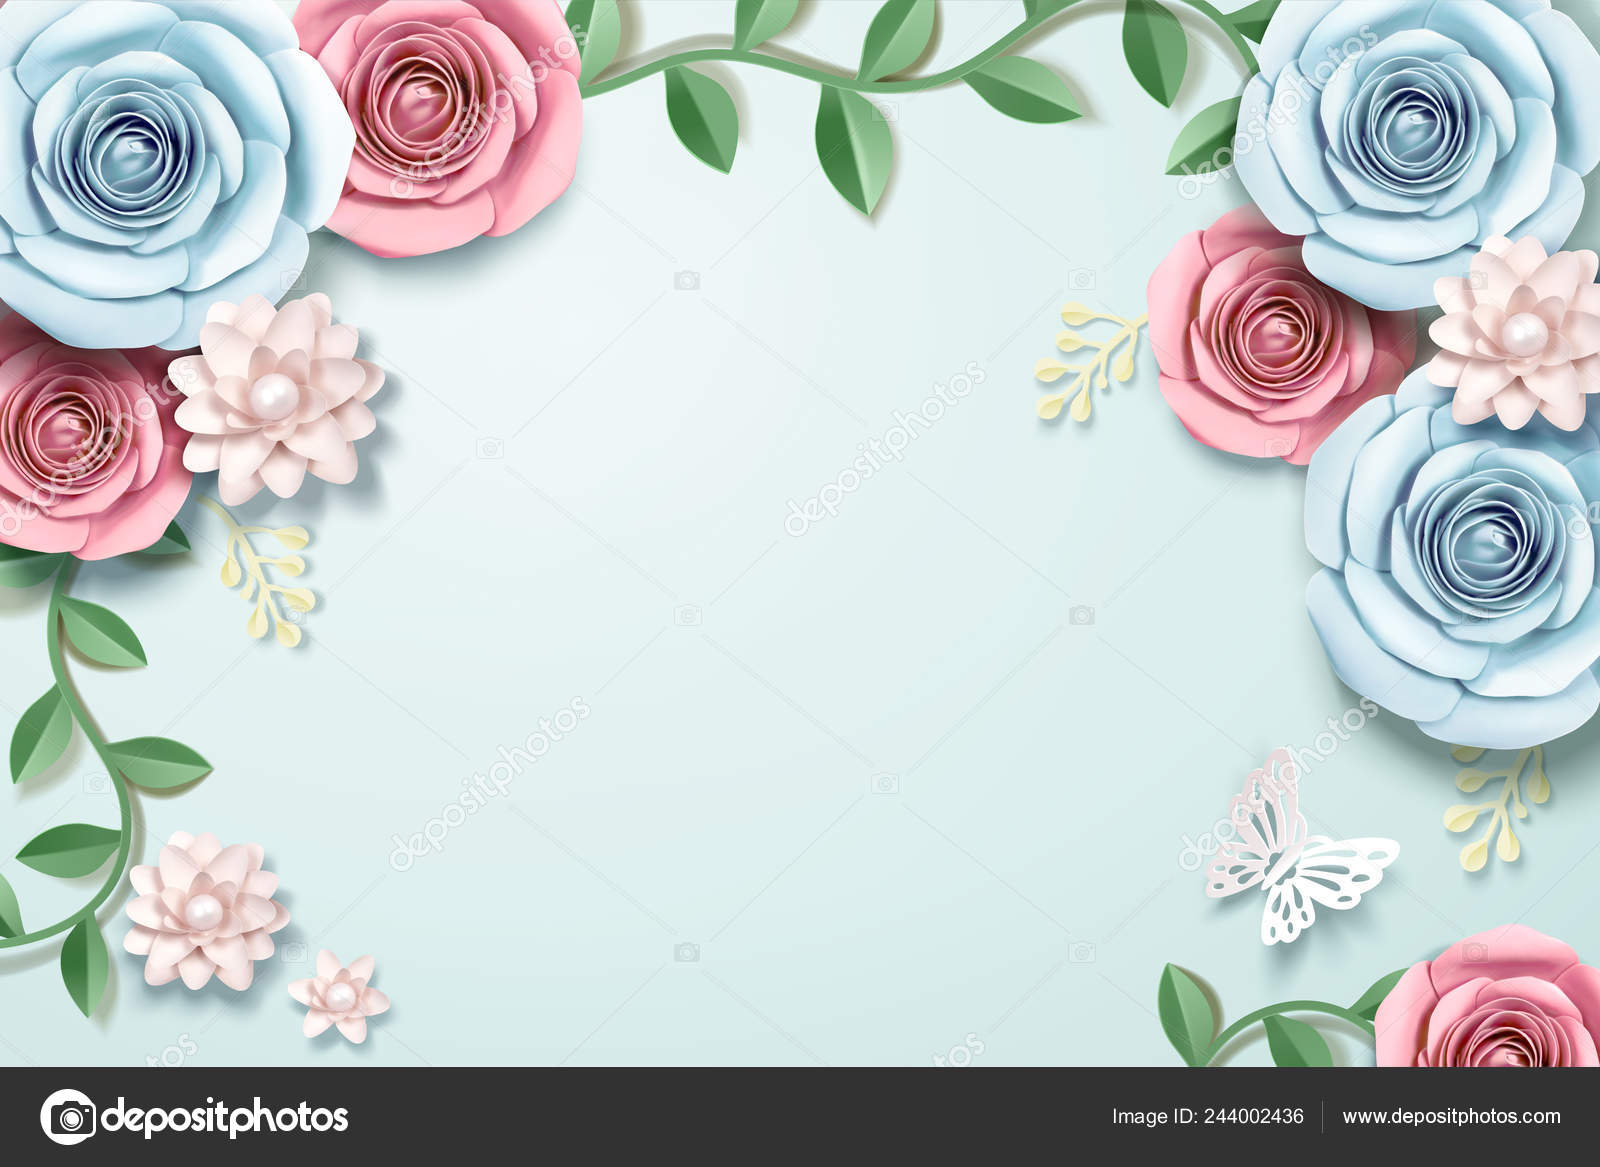 Pink Floral Paper Vector Background Stock Illustration - Download